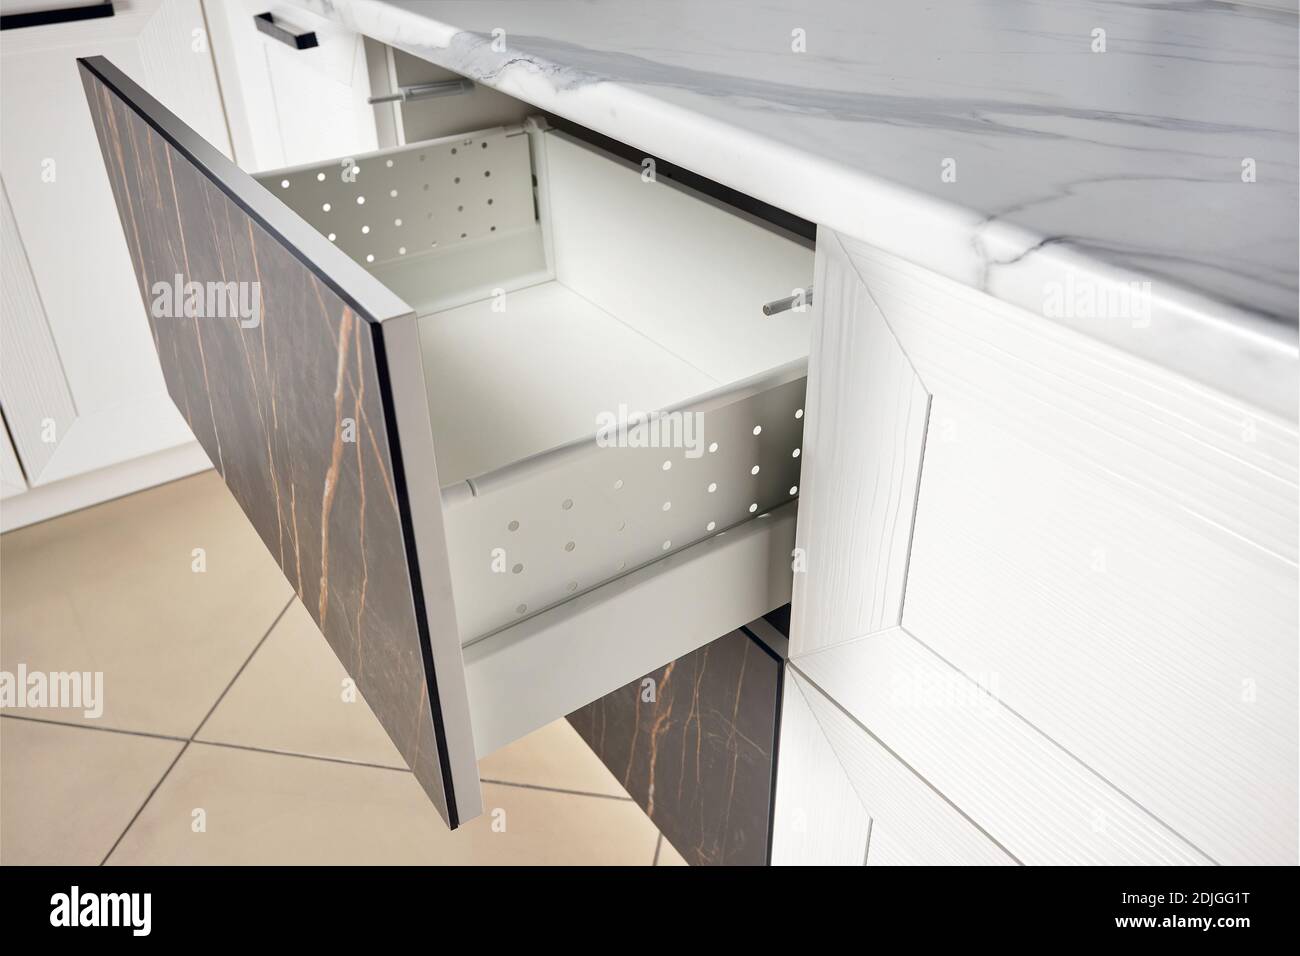 Küchenschrank Tür Schublade Seitenansicht mit Soft Quiet Closer Dämpfer  Puffer Kissen, Lösung zu verlangsamen Schließwirkung des Schranks, Schrank  Stockfotografie - Alamy